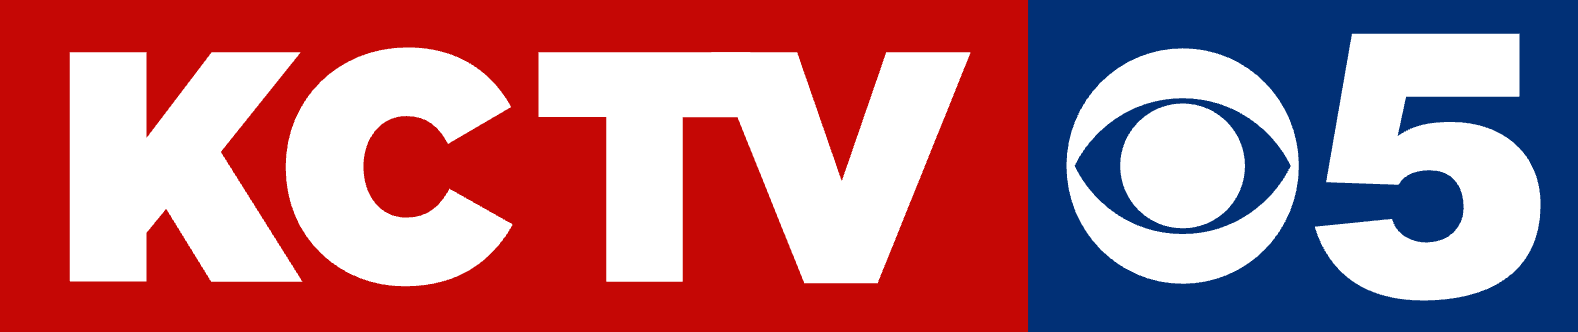 KCTV 5 logo